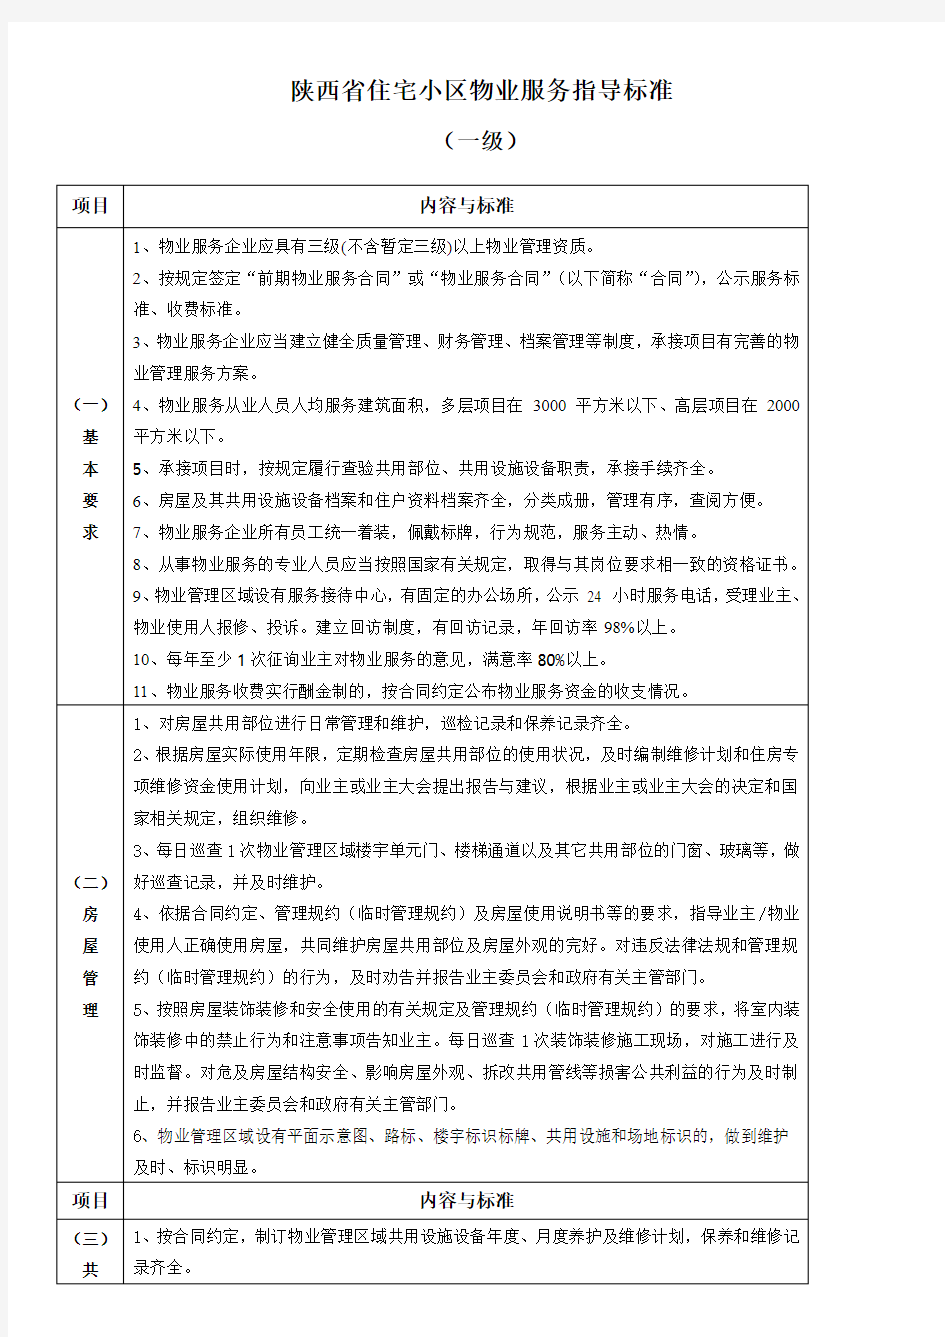 《陕西省住宅小区物业服务指导标准》版